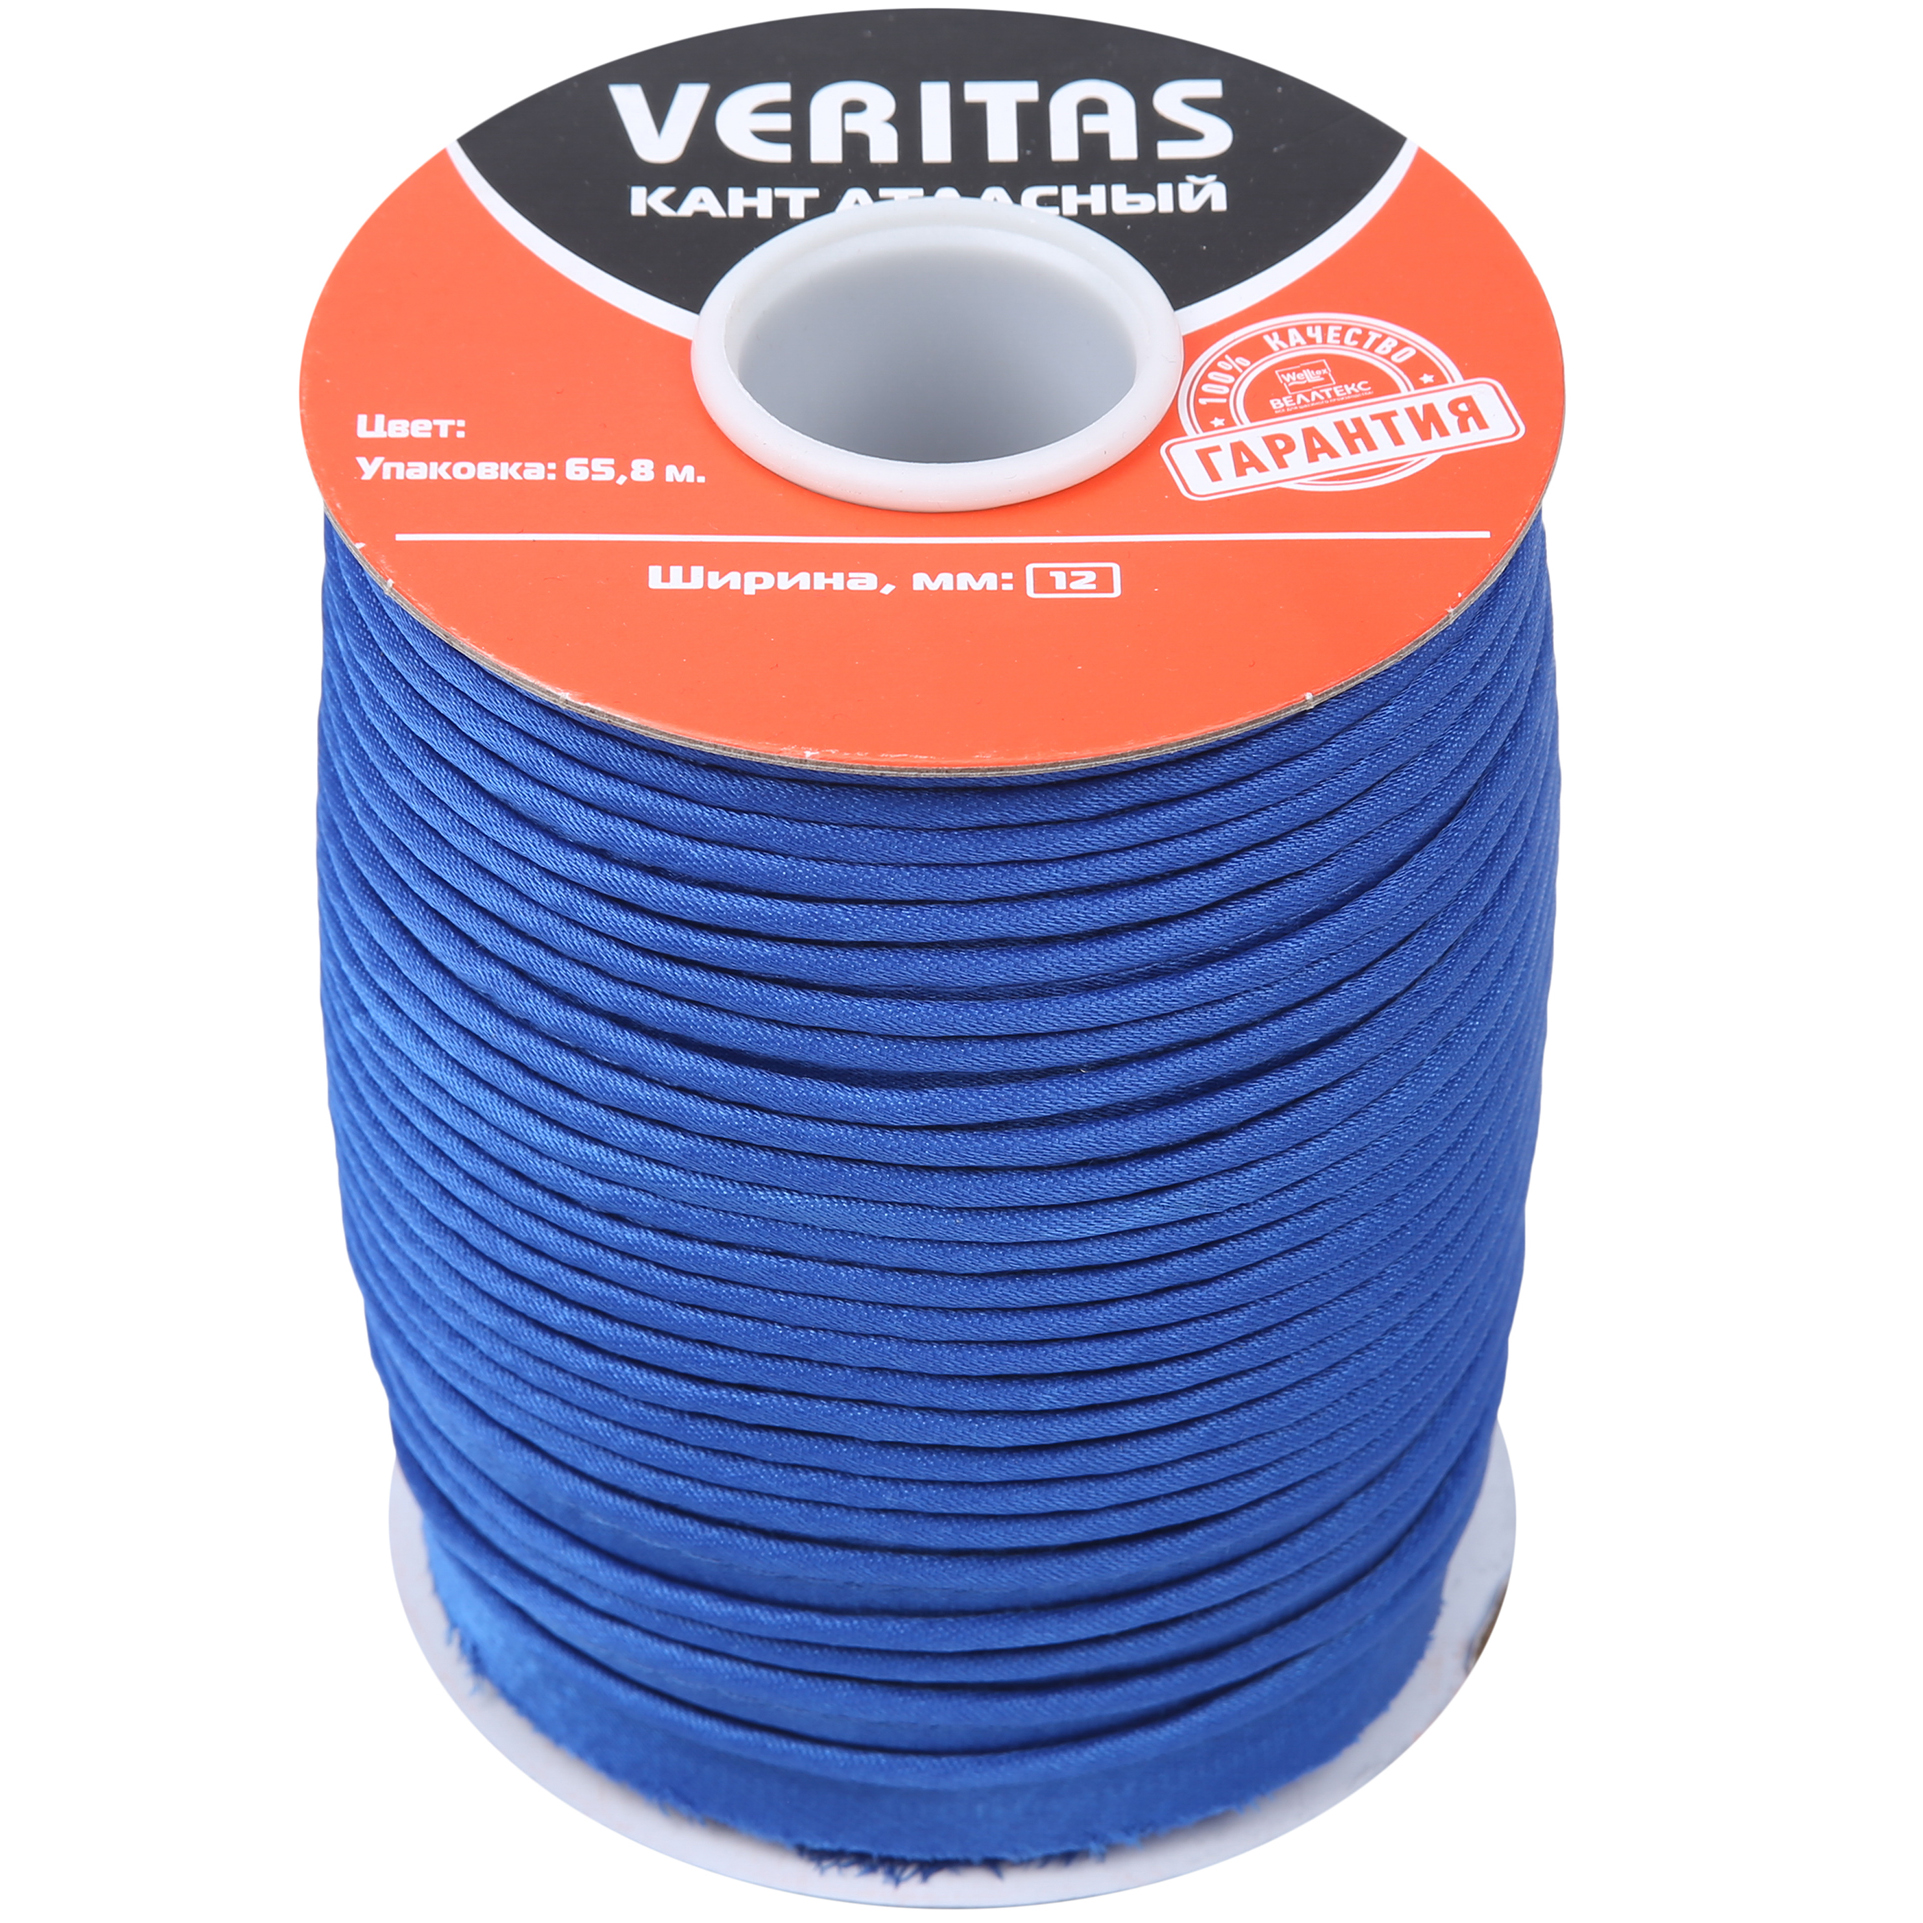 Кант атласный цв S-918 синий яркий (уп 65,8м) Veritas2